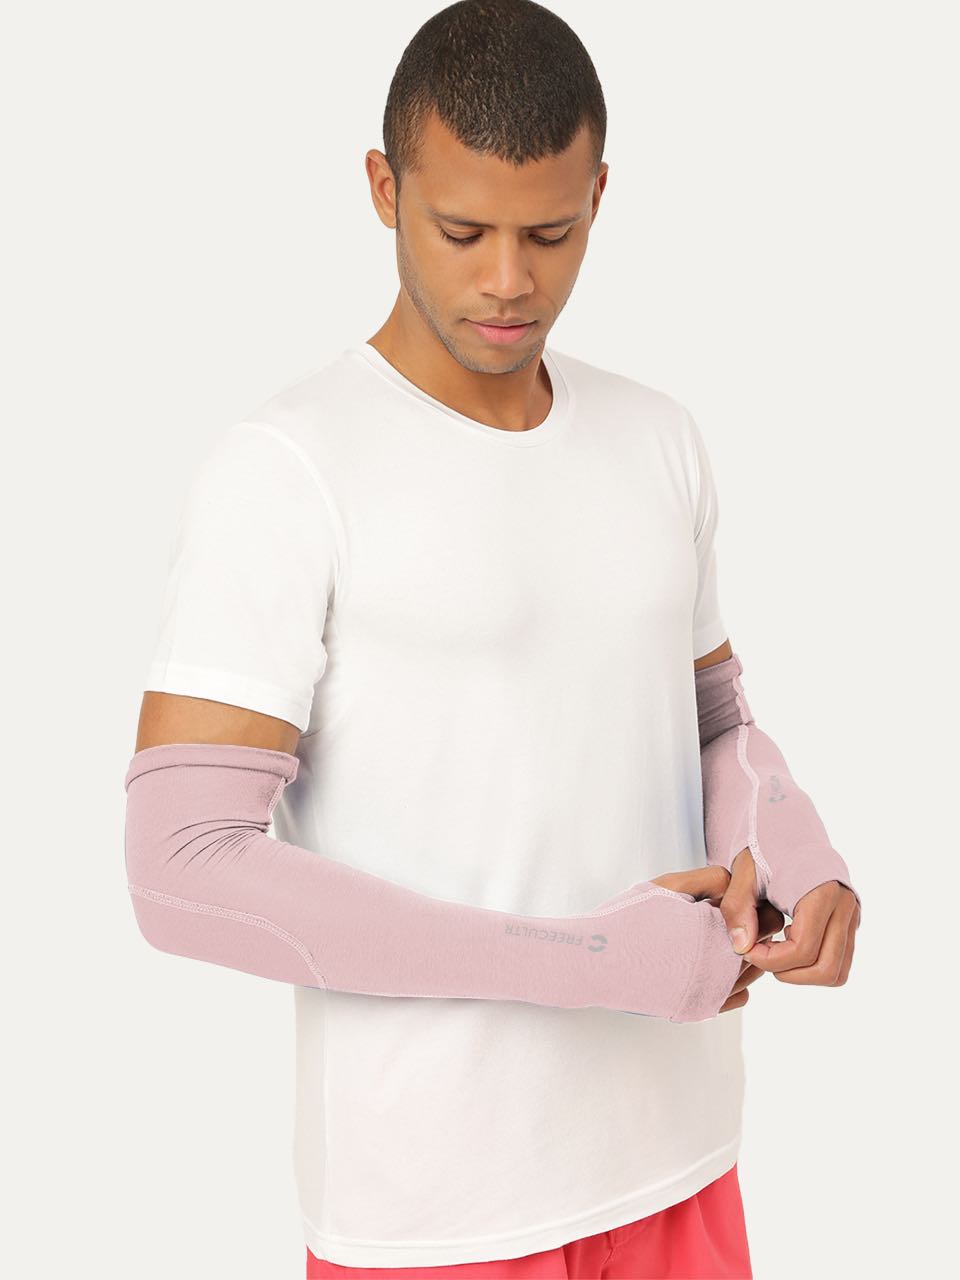 Unisex Arm Sleeves (Pack of 1)